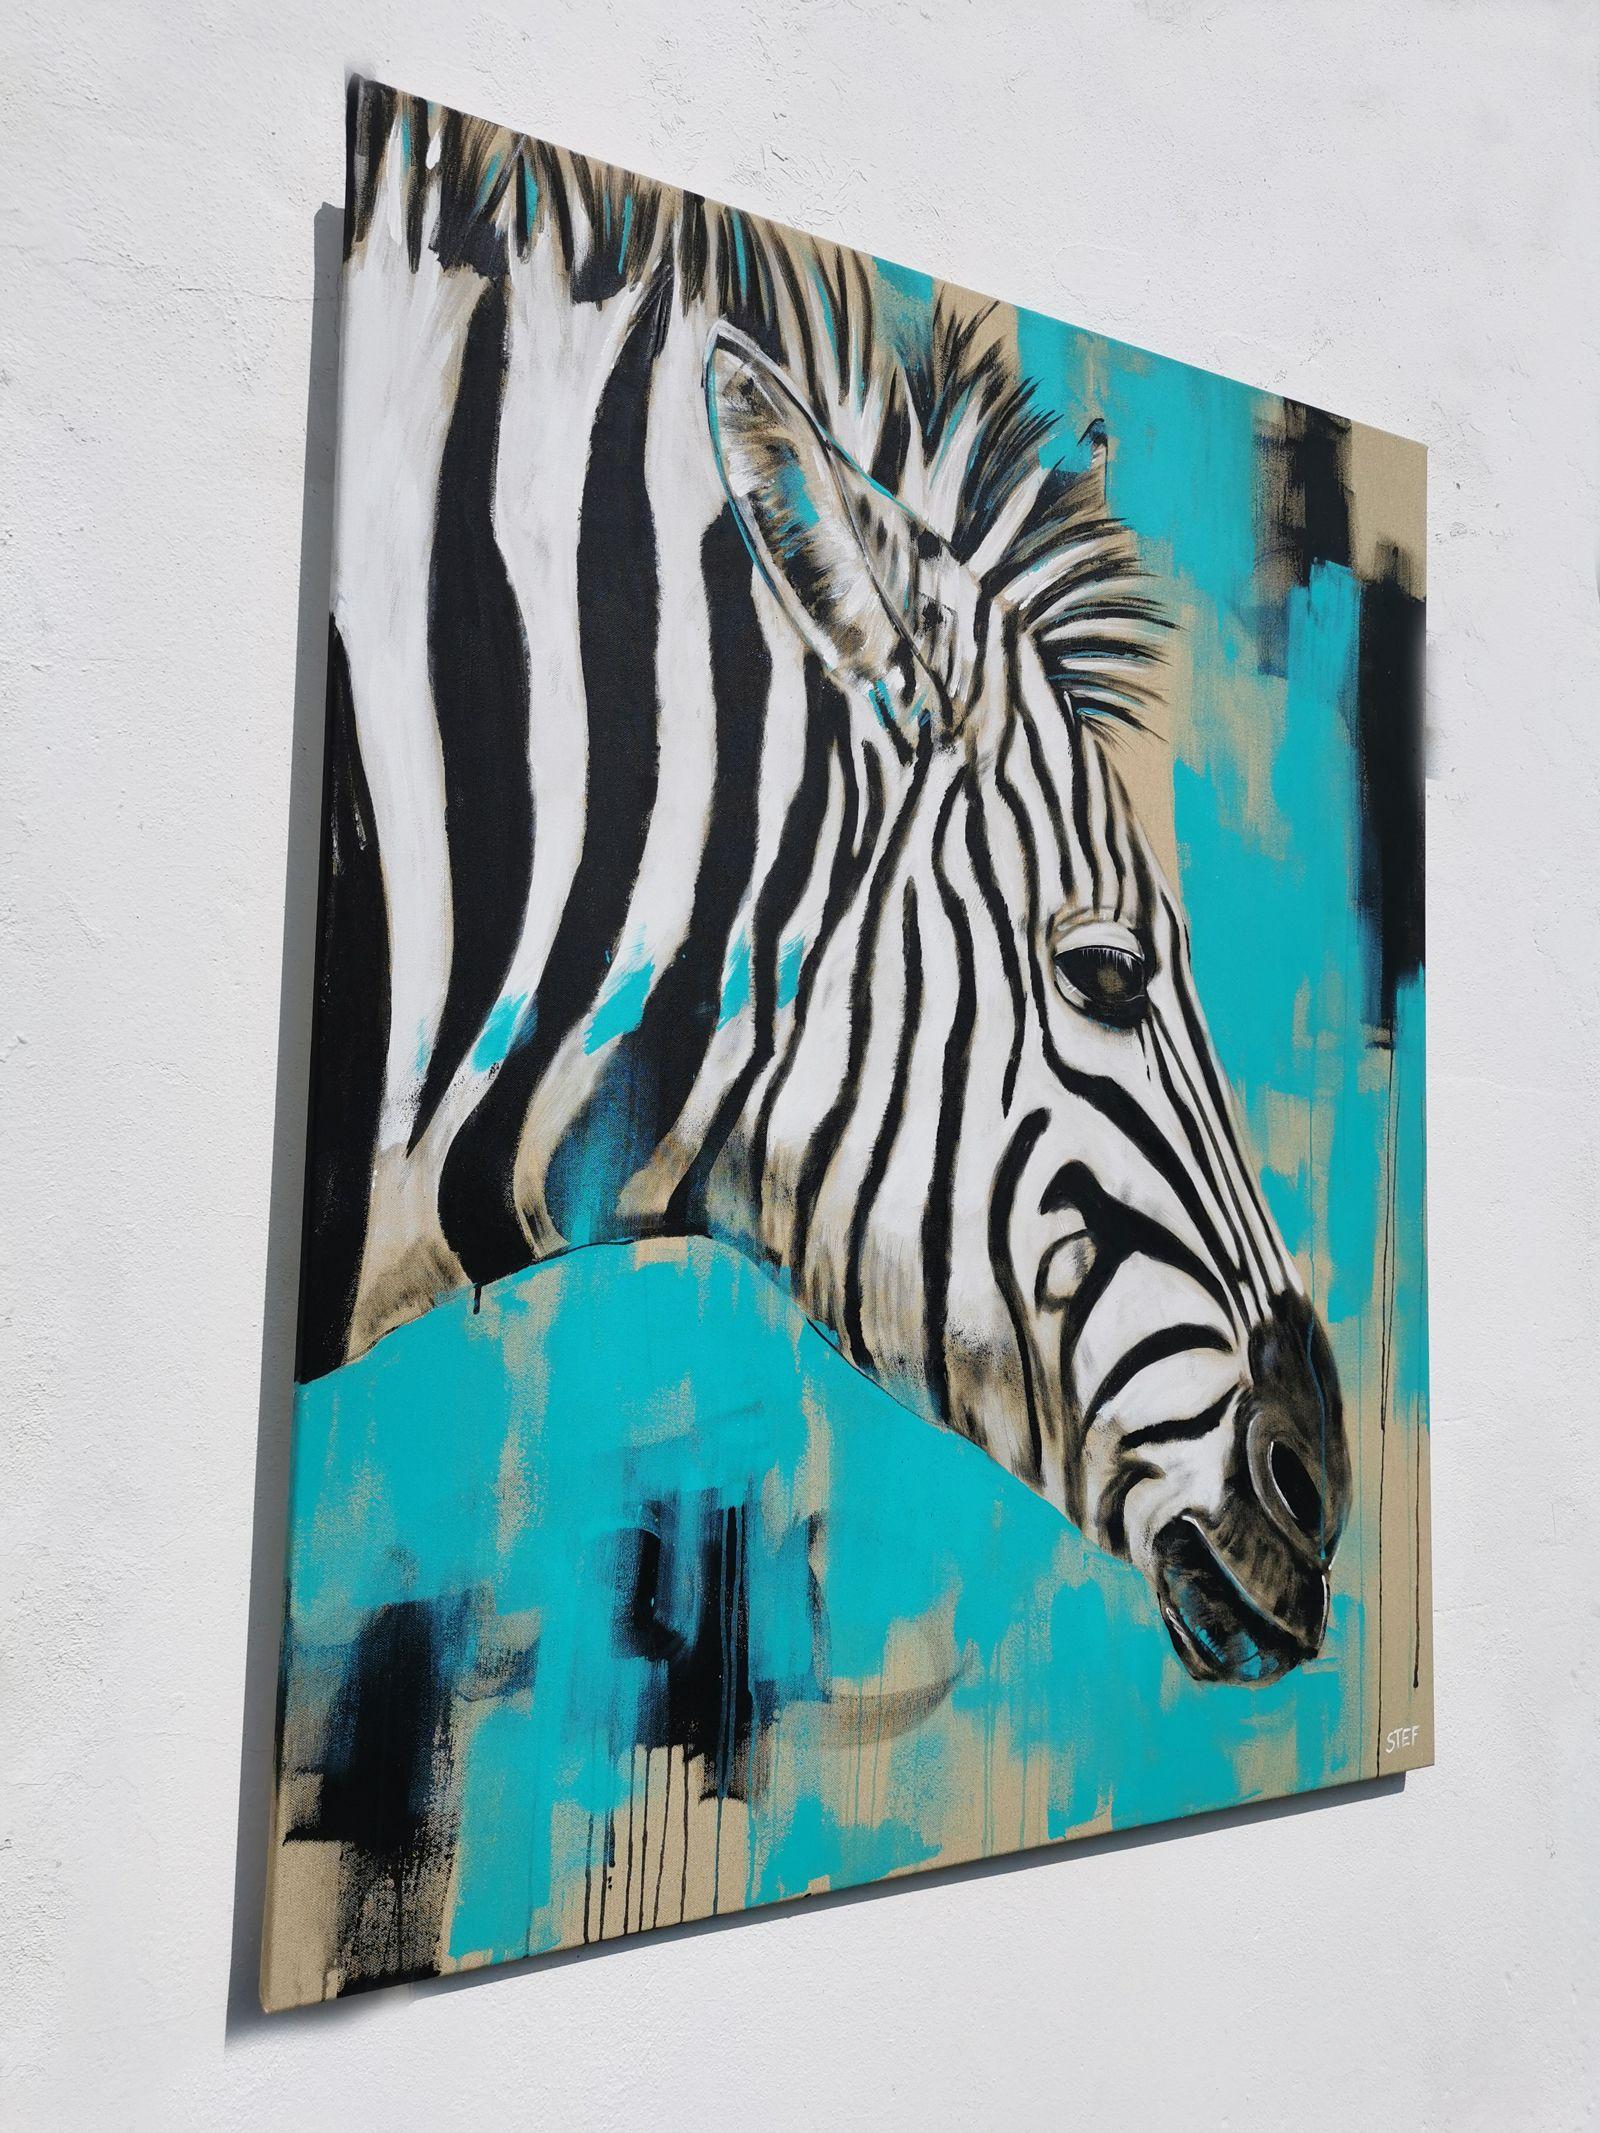 ZEBRA est une peinture expressive d'une tête de zèbre en gros plan.    Splashing Colors en noir, blanc et turquoise sur toile brute.  La couleur monochrome en combinaison avec le ton doux de la toile développe un charme particulier.    100 x 120 cm 